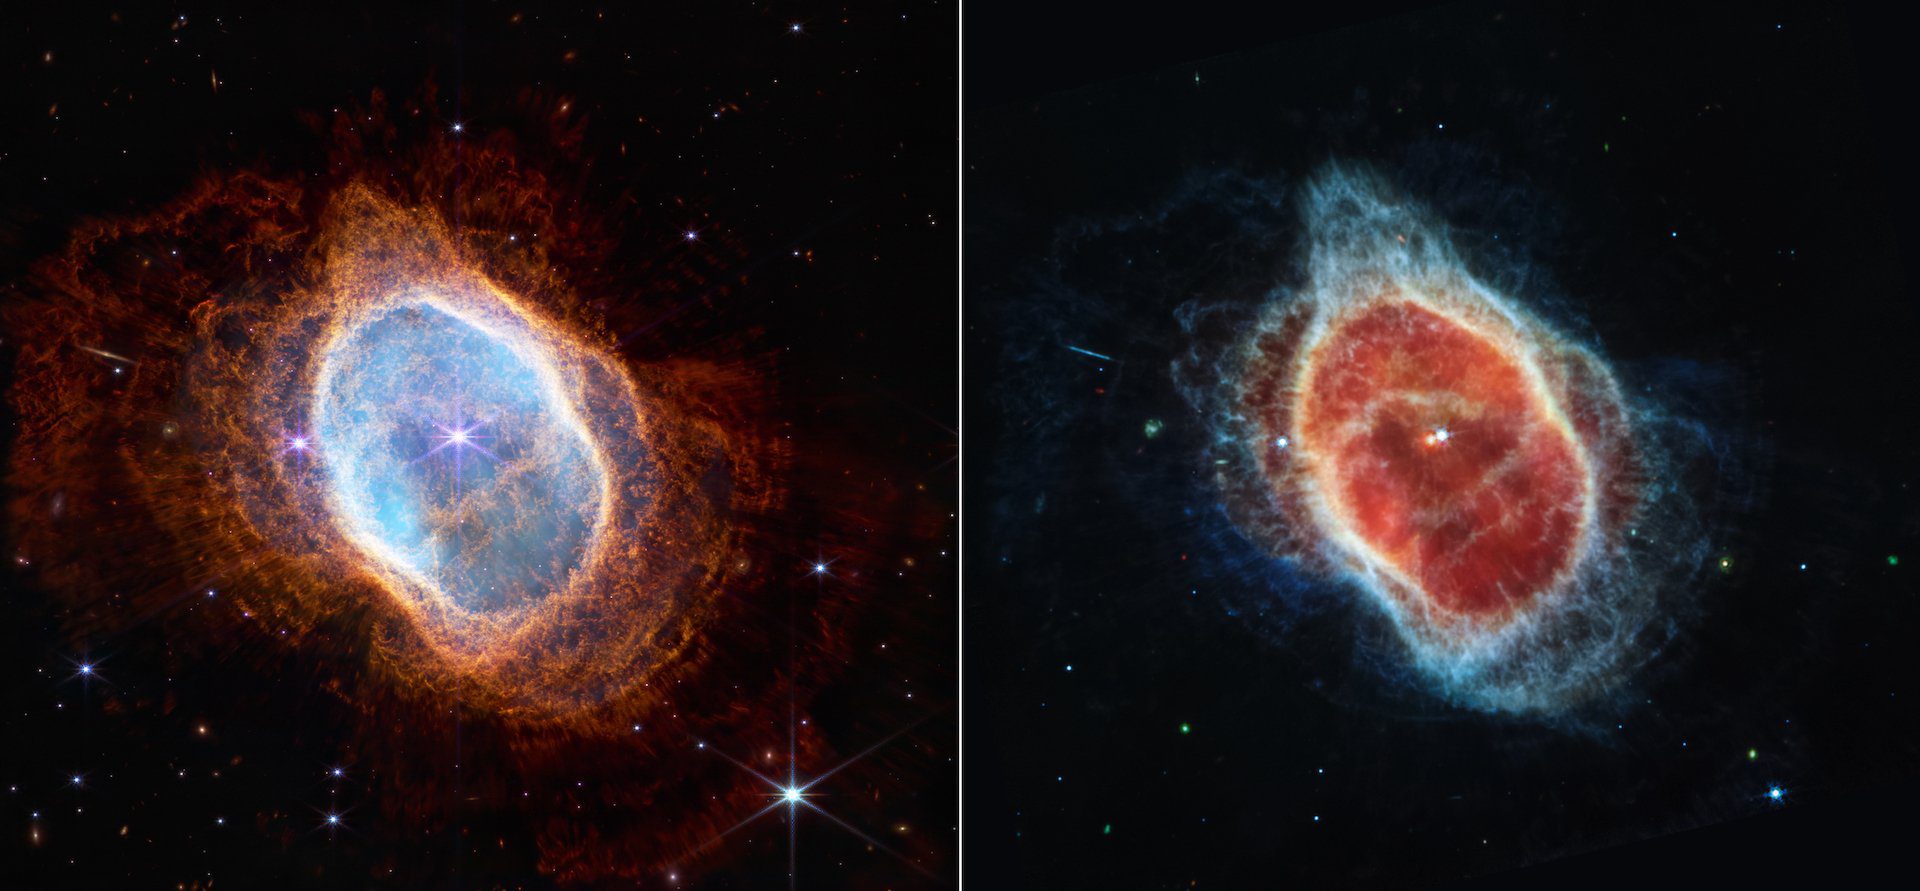 Ölmekte olan bir yıldız tarafından uzaya fırlatılan canlı gaz ve toz kabuklarının James Webb Teleskobu görüntüsü.